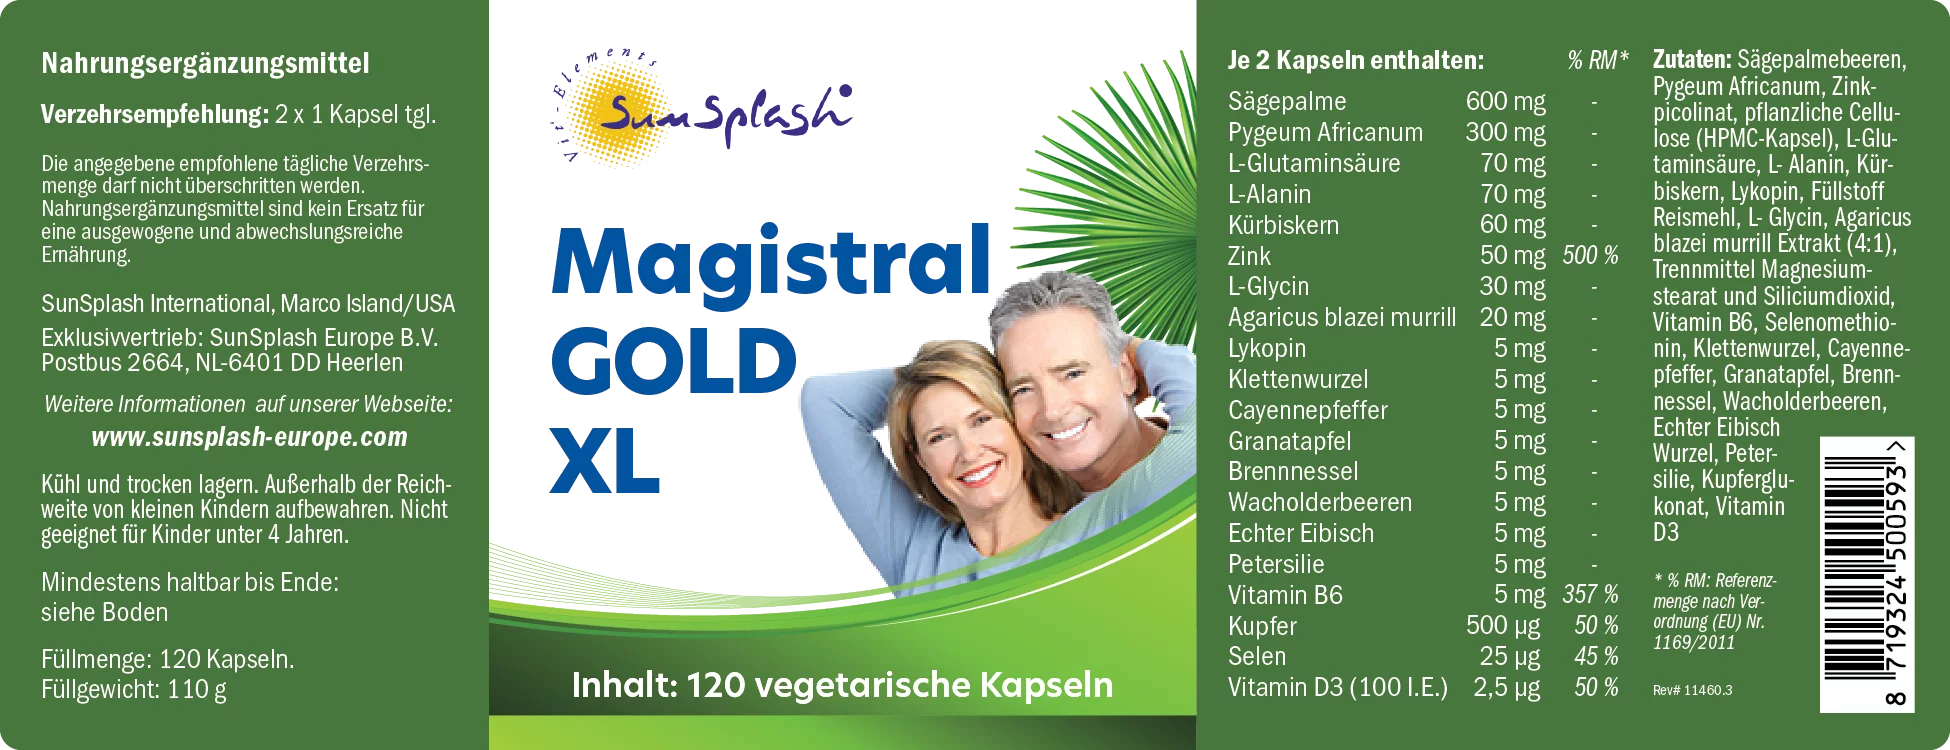 Magistral® Gold XL (120 caps.)